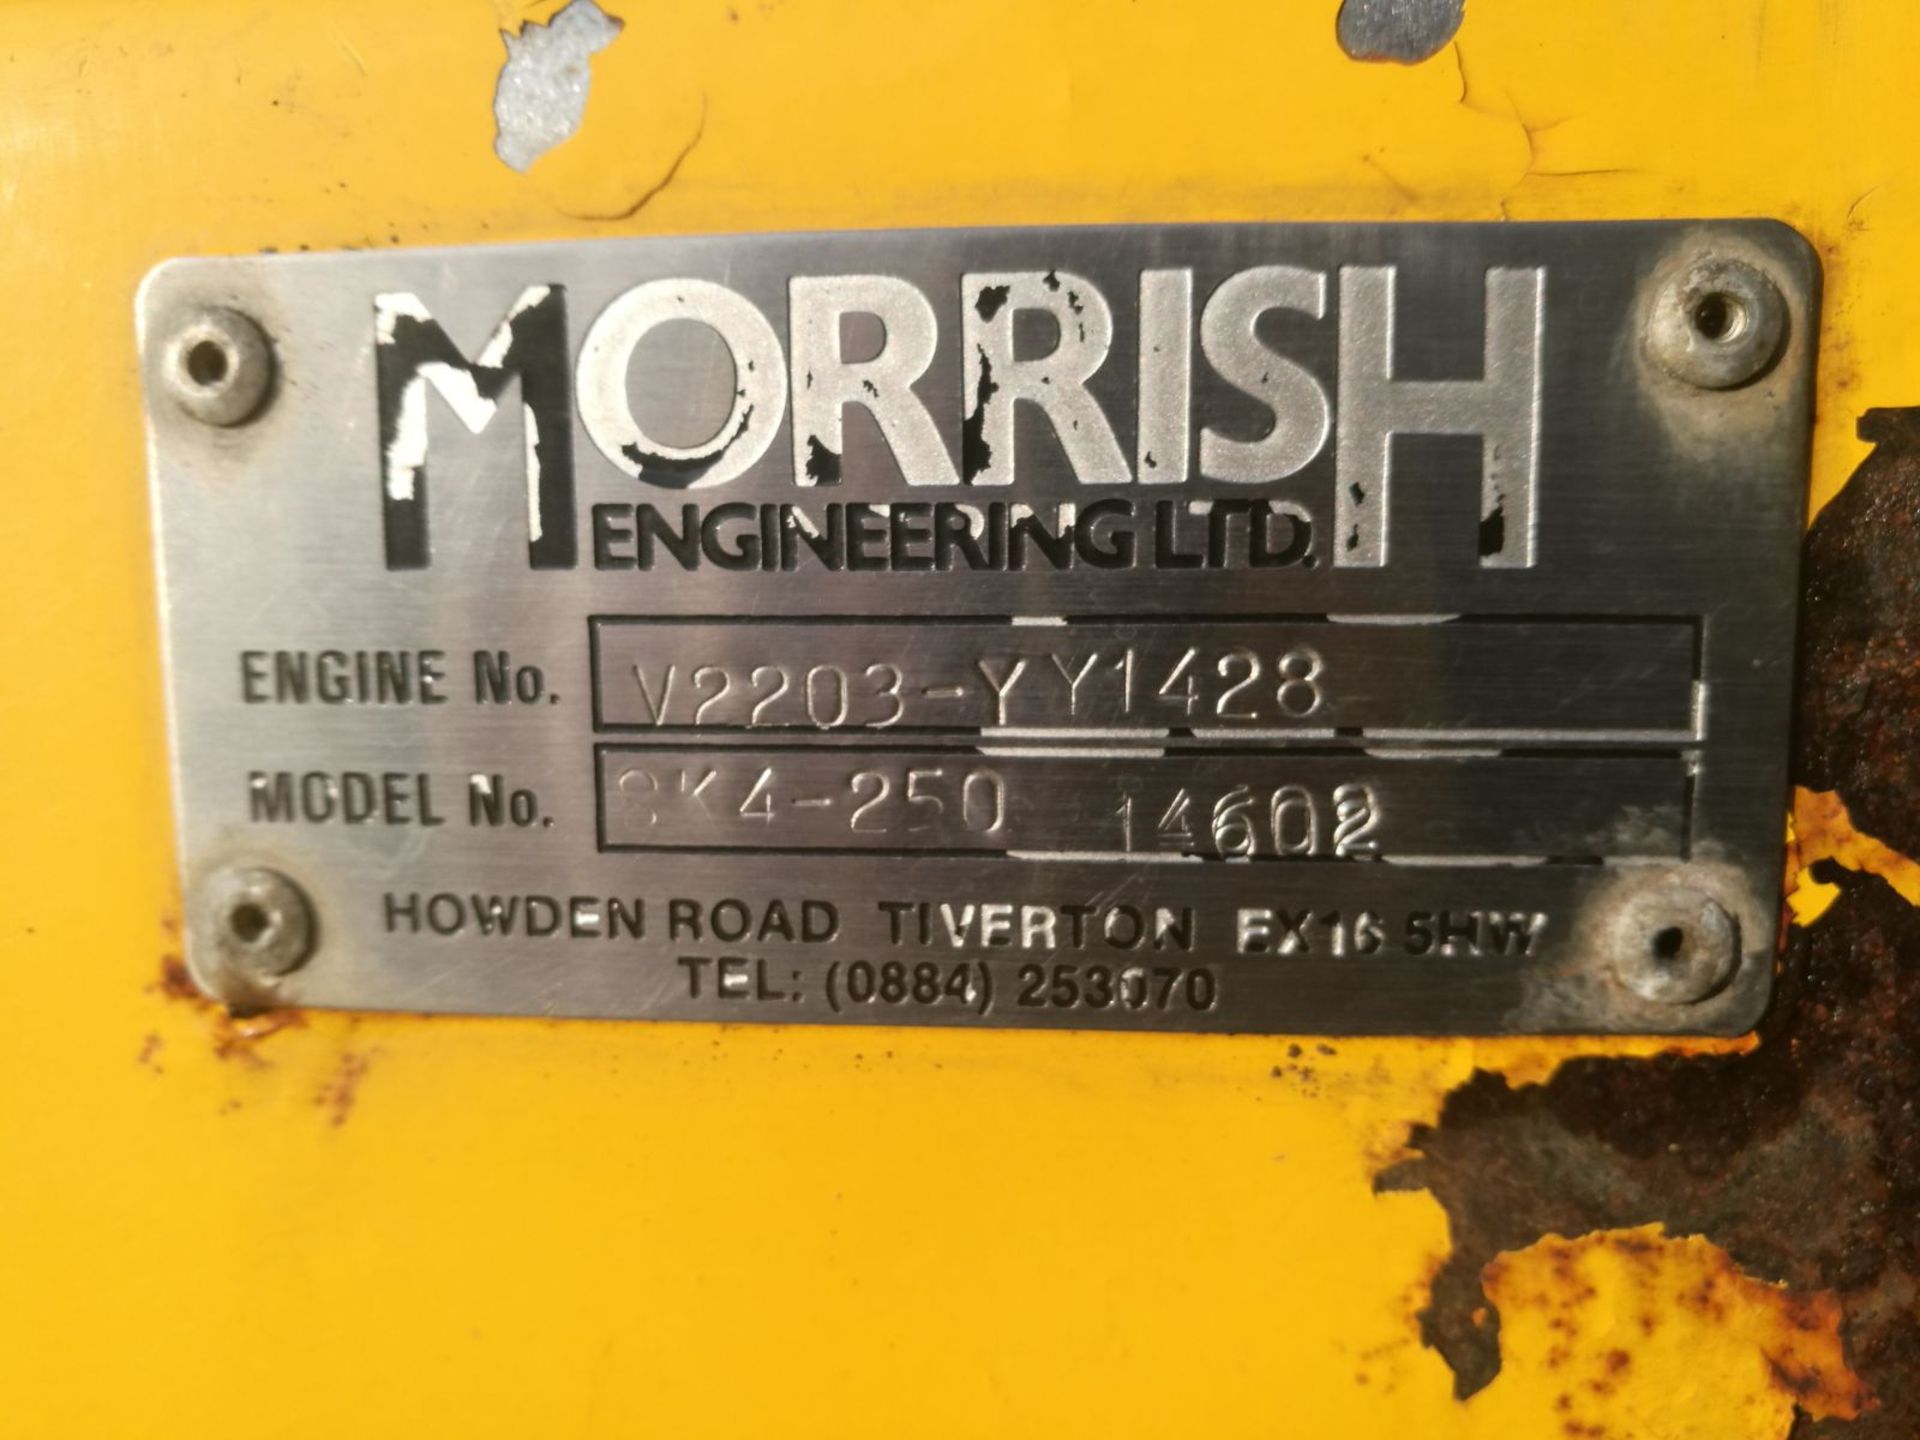 MORRISH ENGINEERING LTD, MODEL SK-4 -250 SAND SKIMMER LOADER *PLUS VAT* - Image 8 of 8